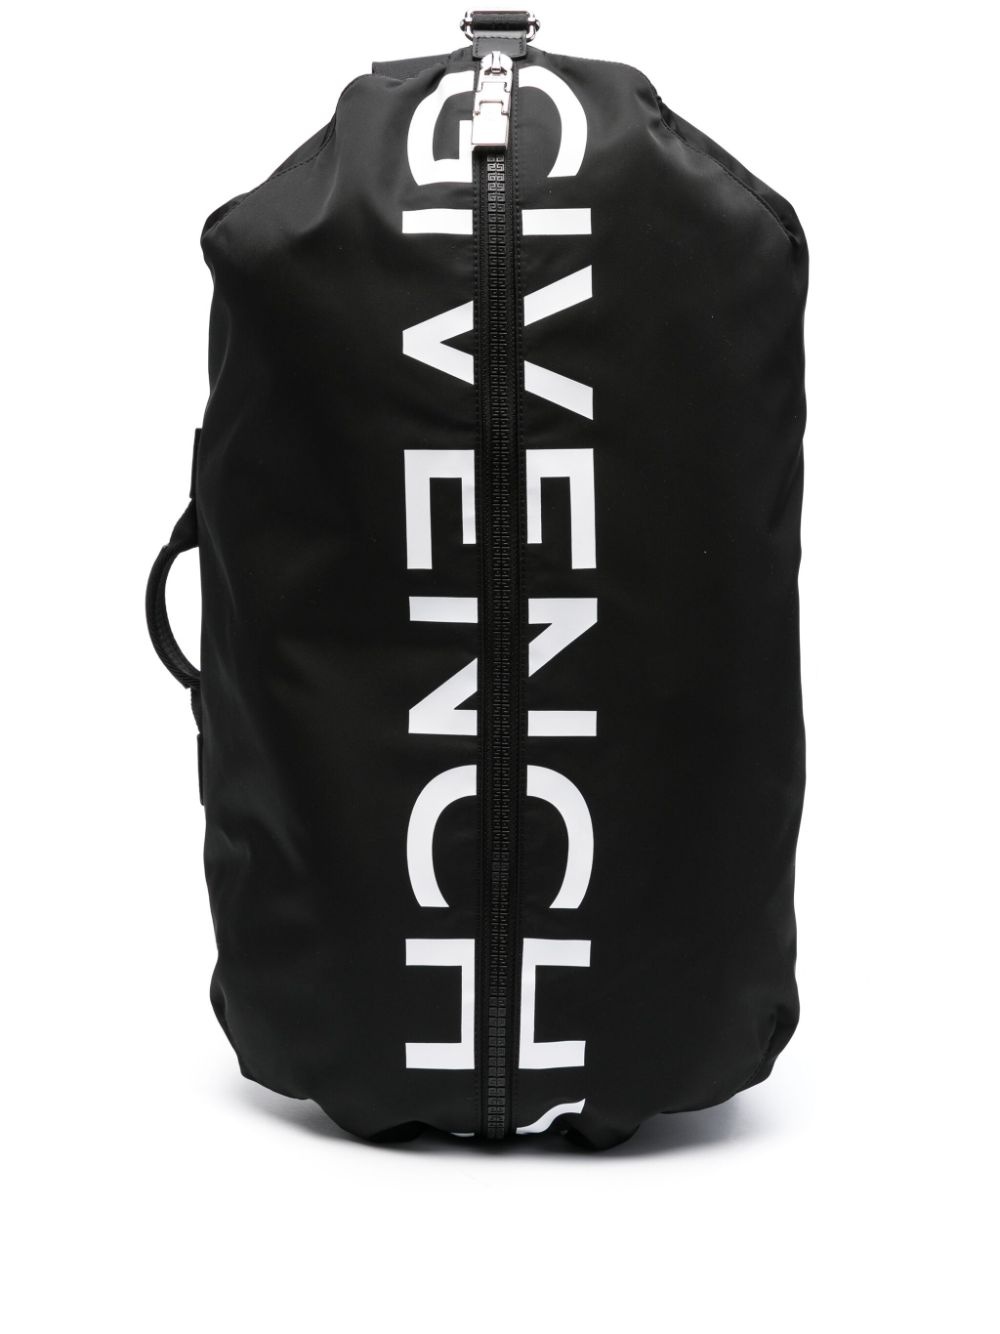 G-zip nylon backpack - 1